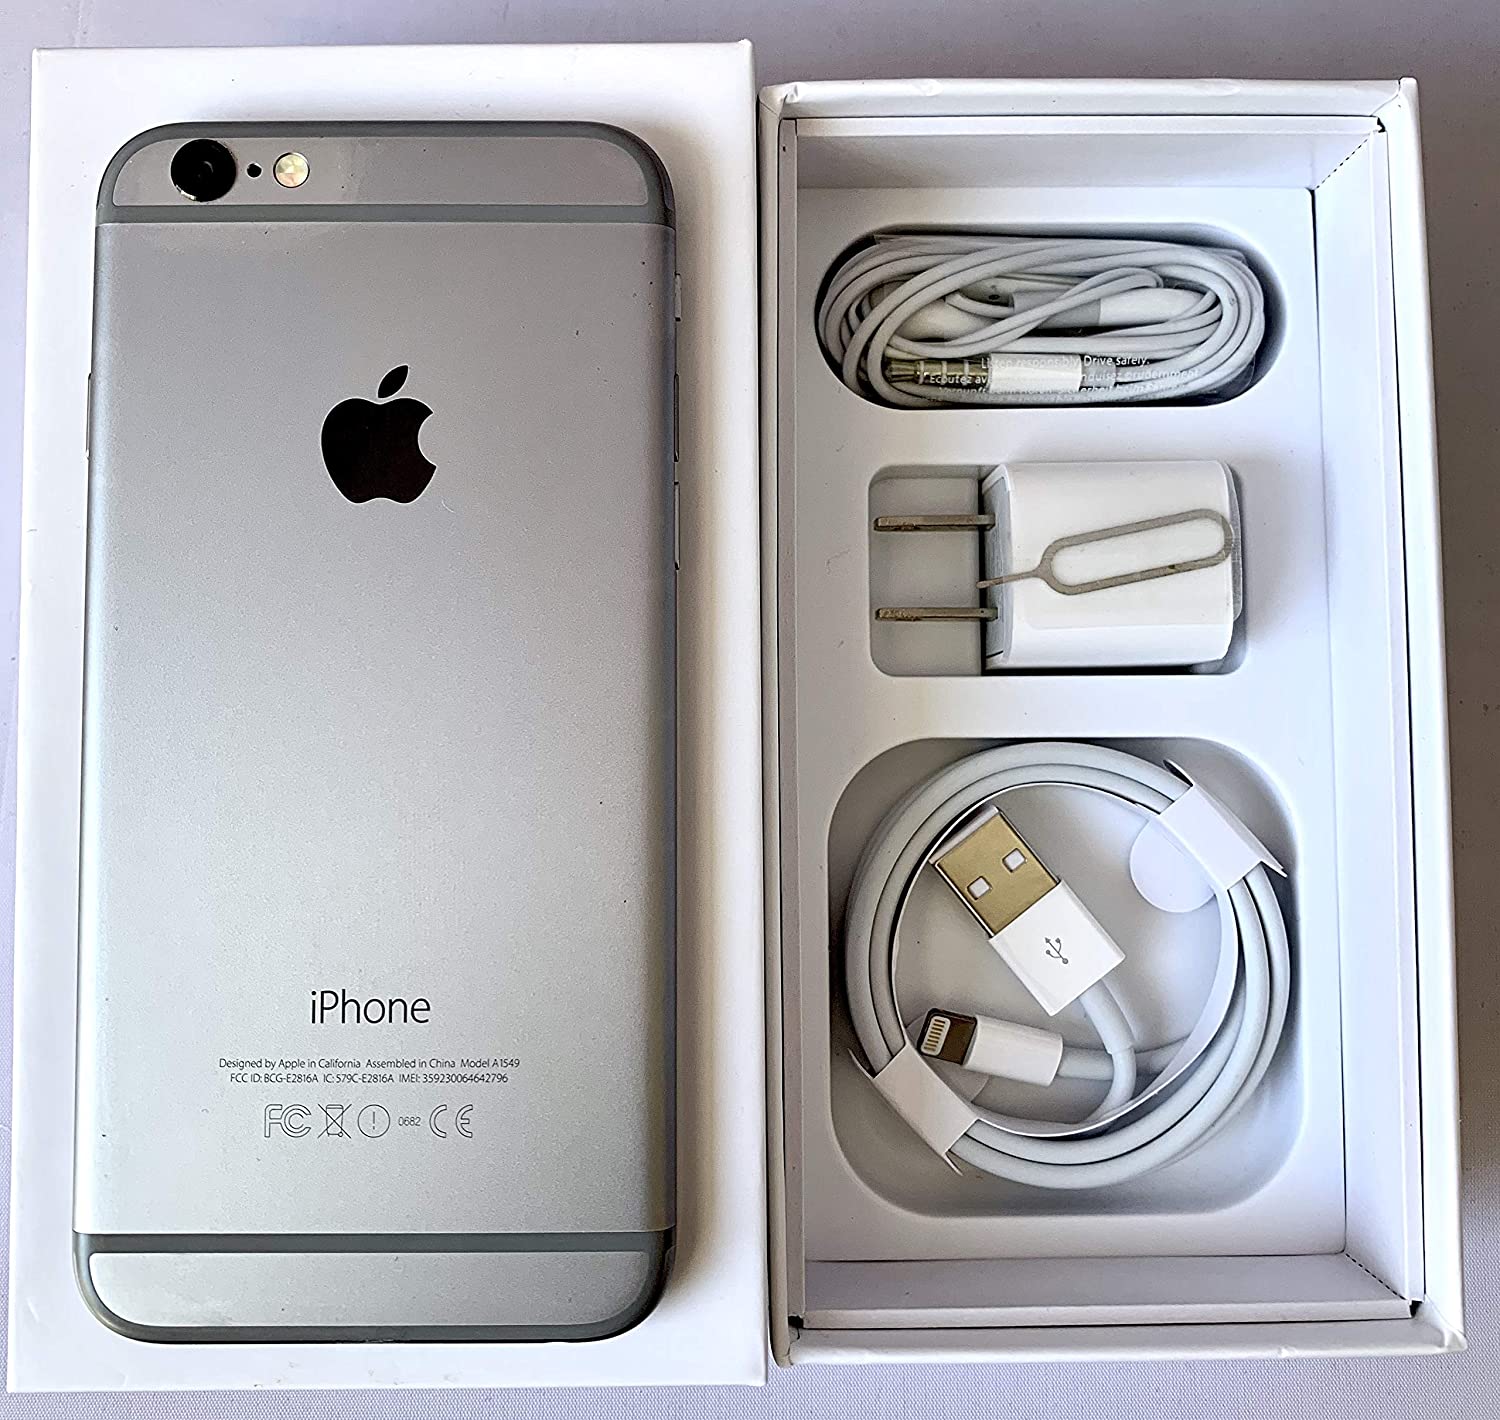 Usado) Apple iPhone 6S (64GB) - Gris espacial